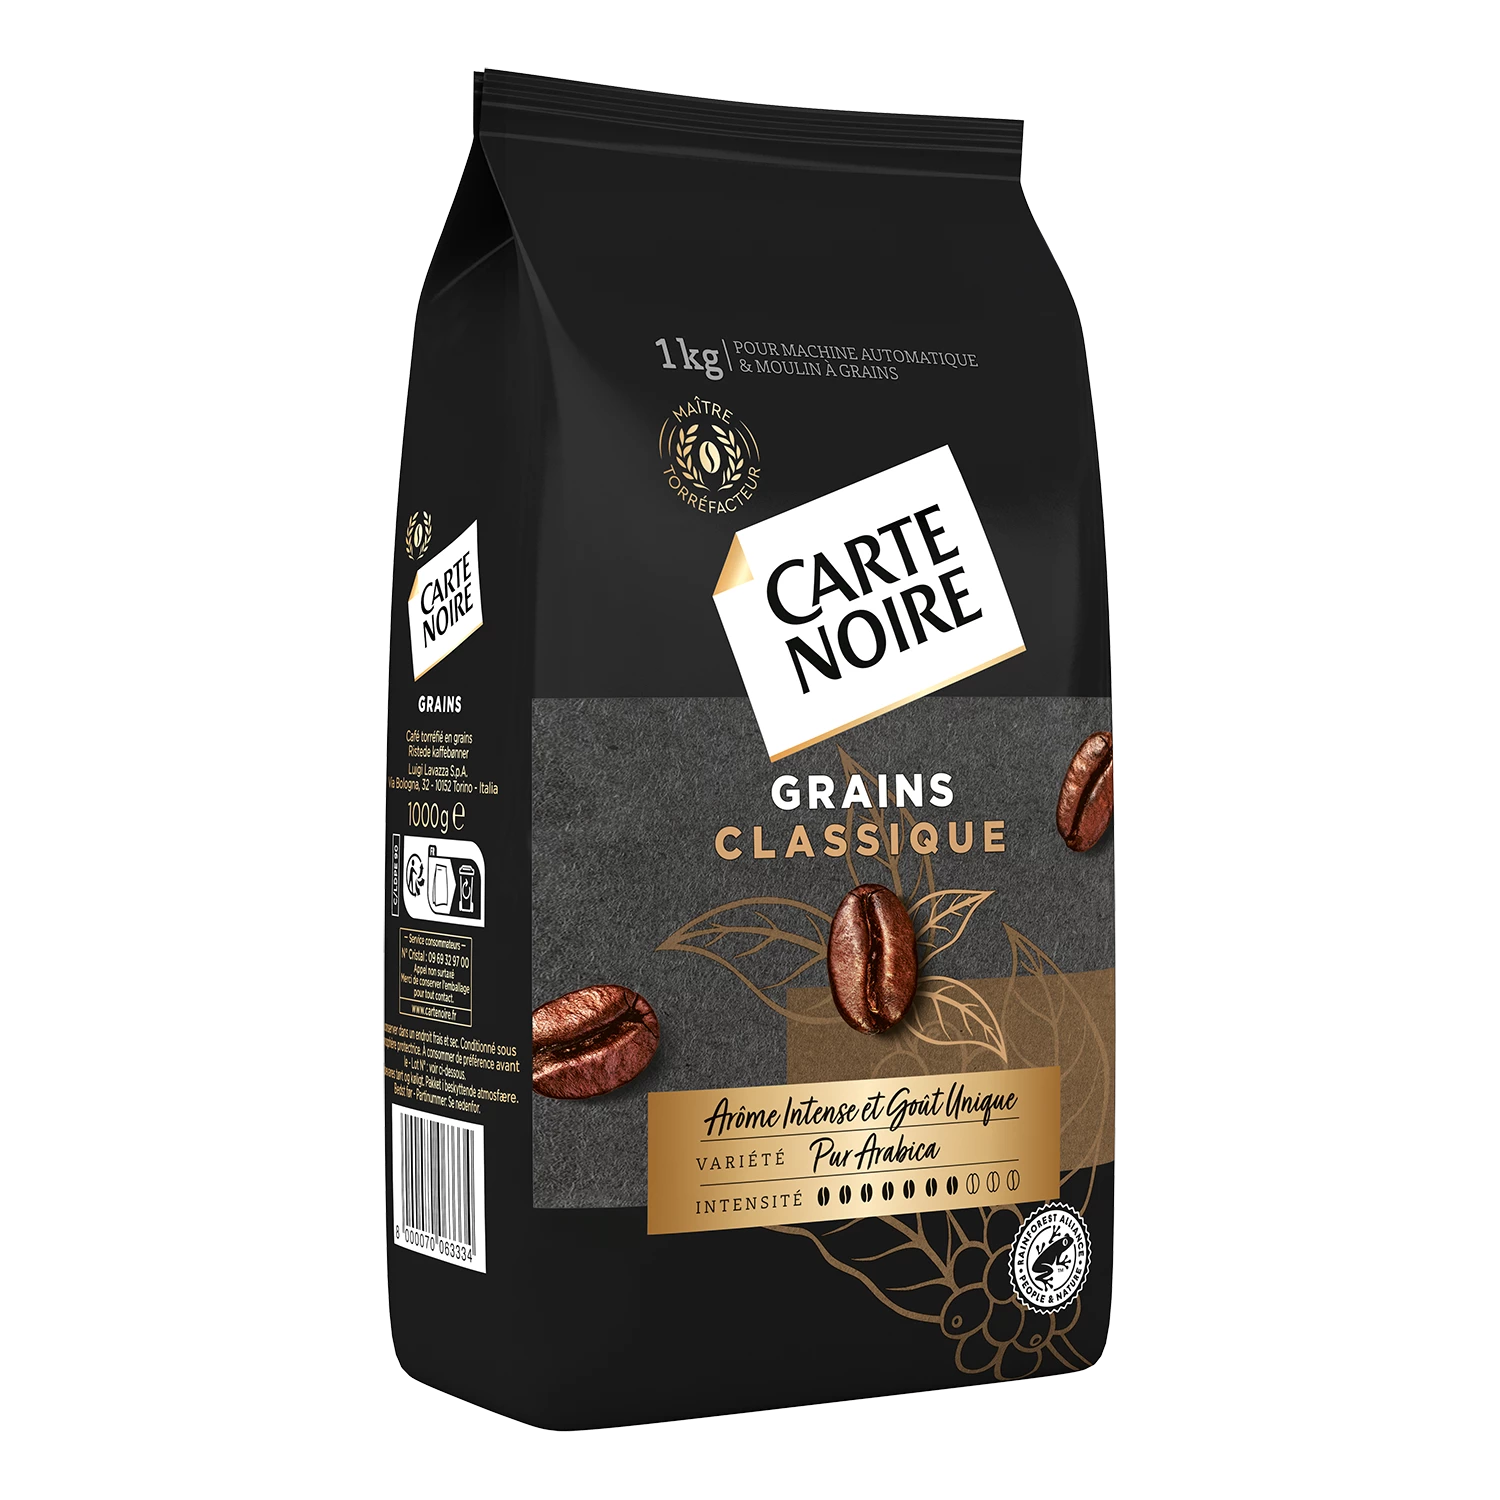 Aroma intenso de granos de café; 1 kg - CARTE NOIRE